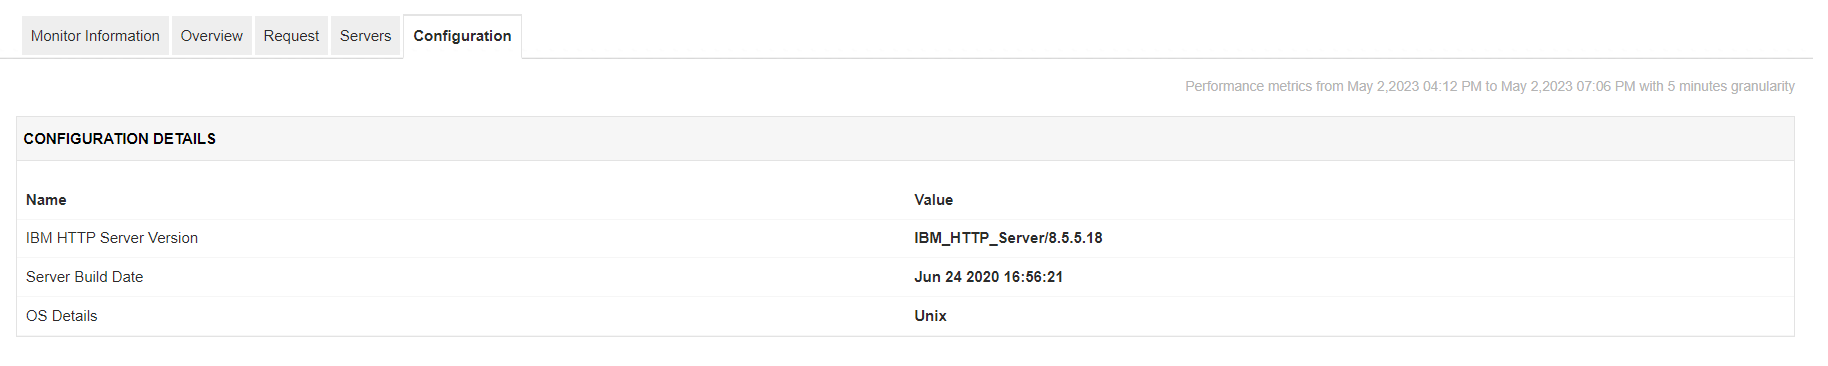 Dashboard del monitoreo de la configuración de IBM HTTP Server de Applications Manager